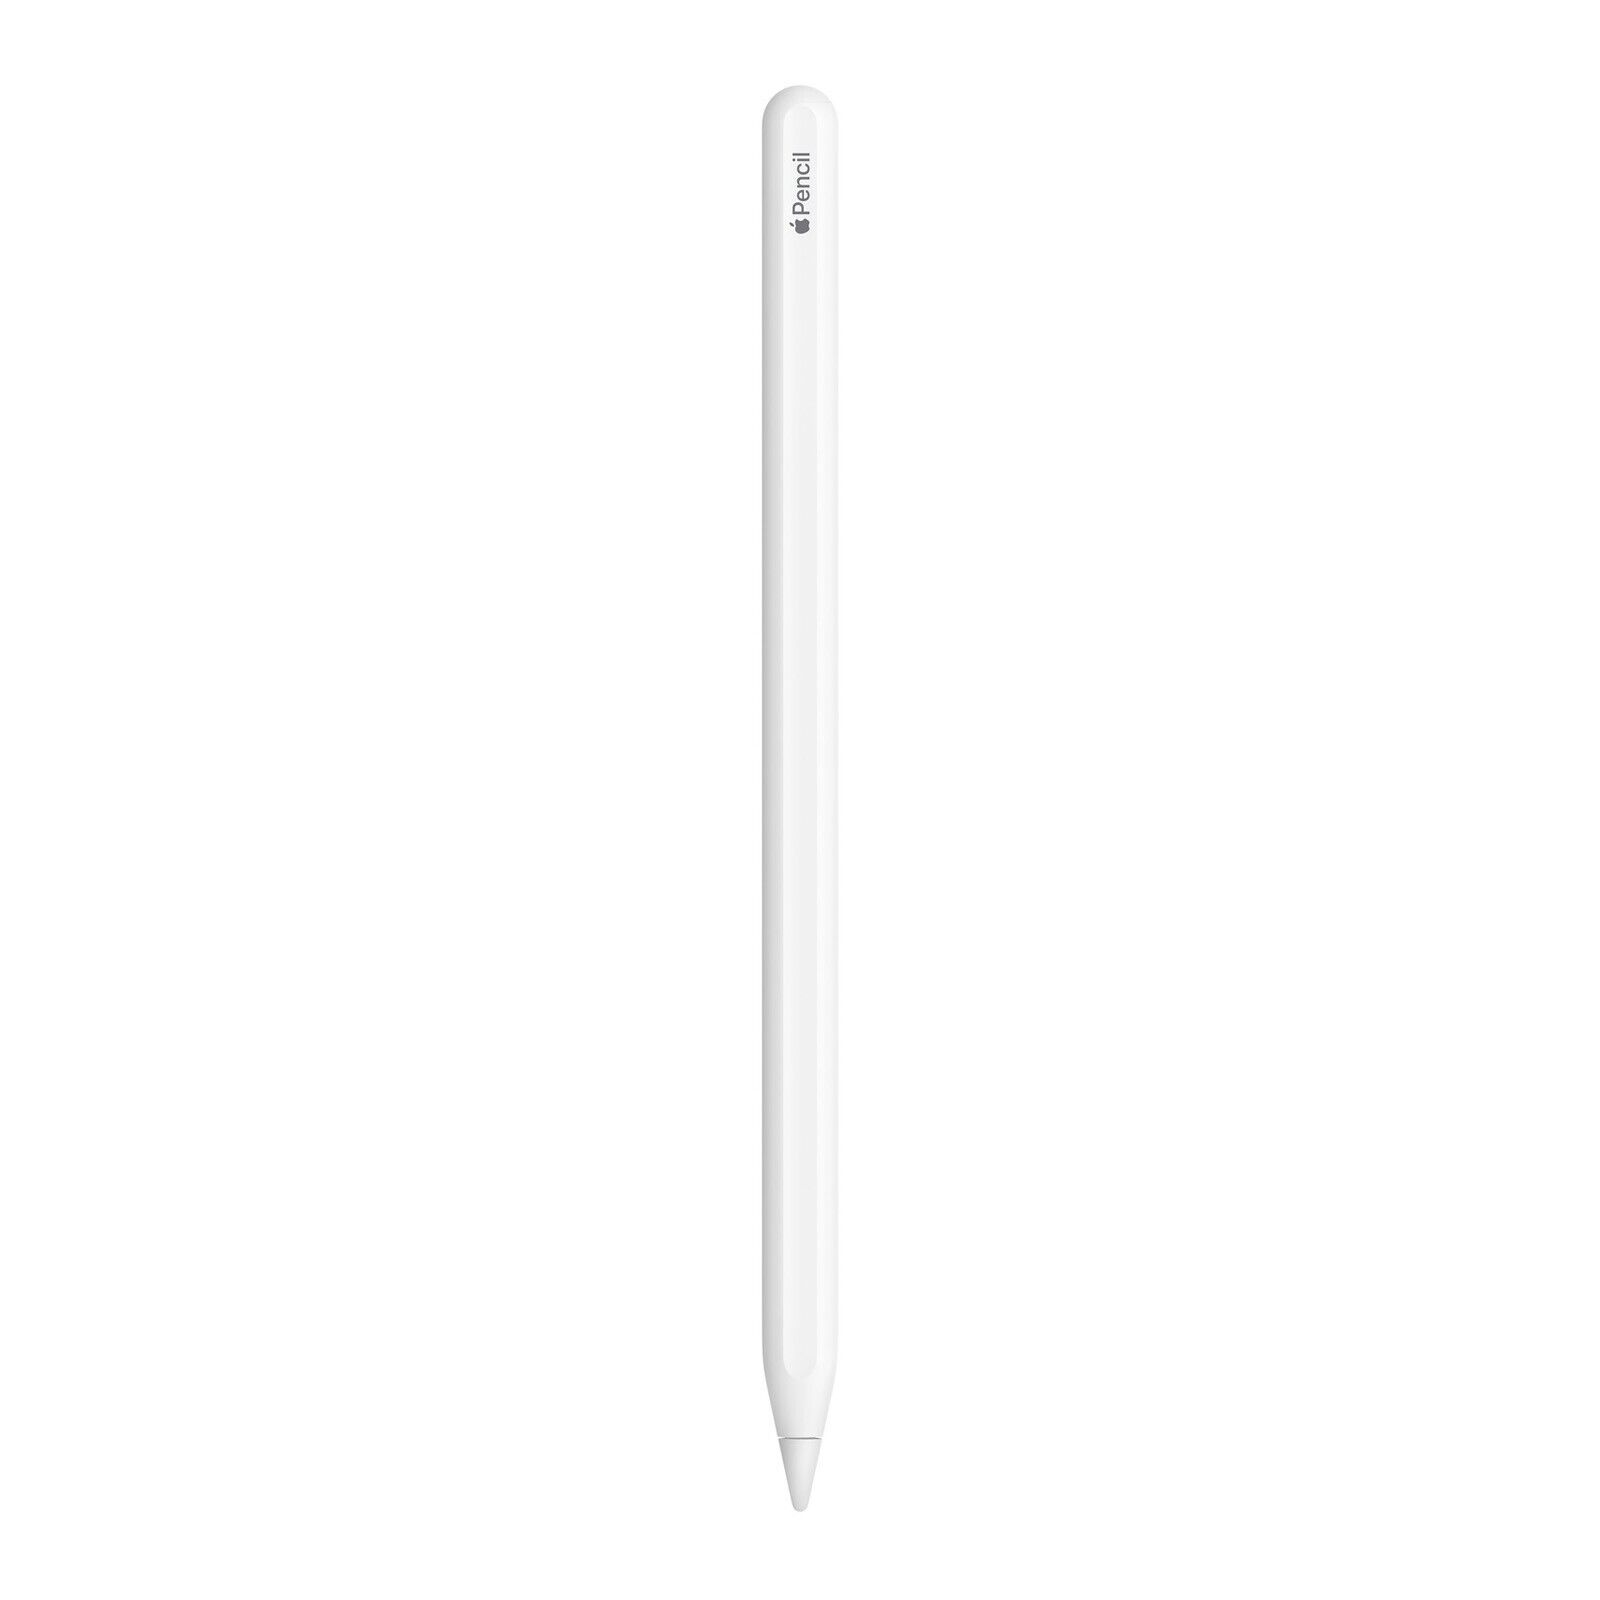 Apple Pencil (2nd Generation) For iPad Pro iPad Air 3 iPad Mini 5 iPad 10th gen